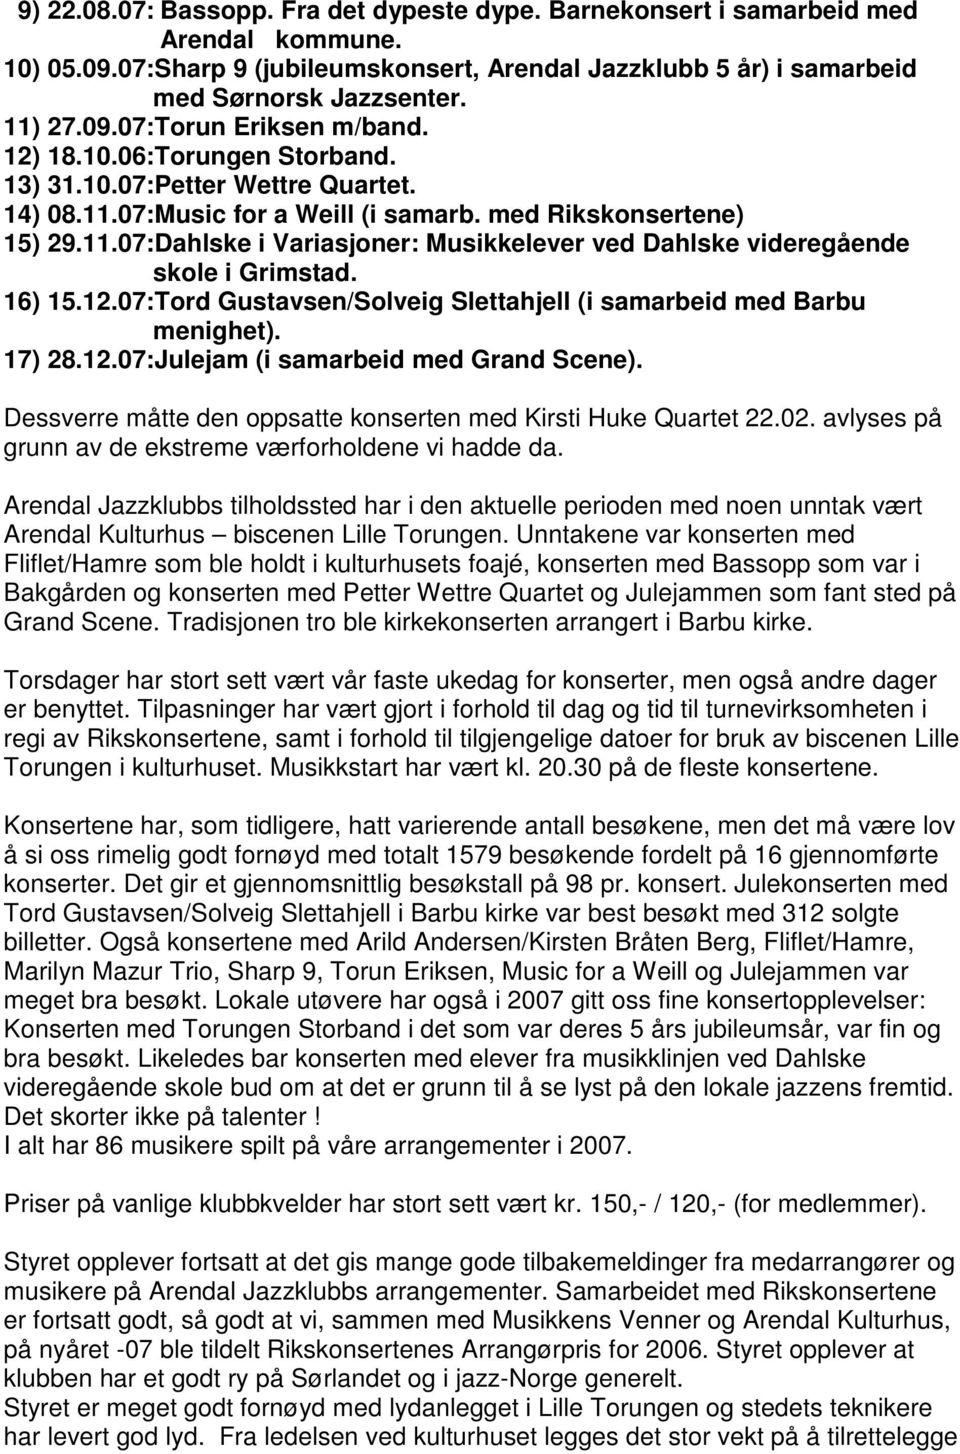 16) 15.12.07:Tord Gustavsen/Solveig Slettahjell (i samarbeid med Barbu menighet). 17) 28.12.07:Julejam (i samarbeid med Grand Scene). Dessverre måtte den oppsatte konserten med Kirsti Huke Quartet 22.